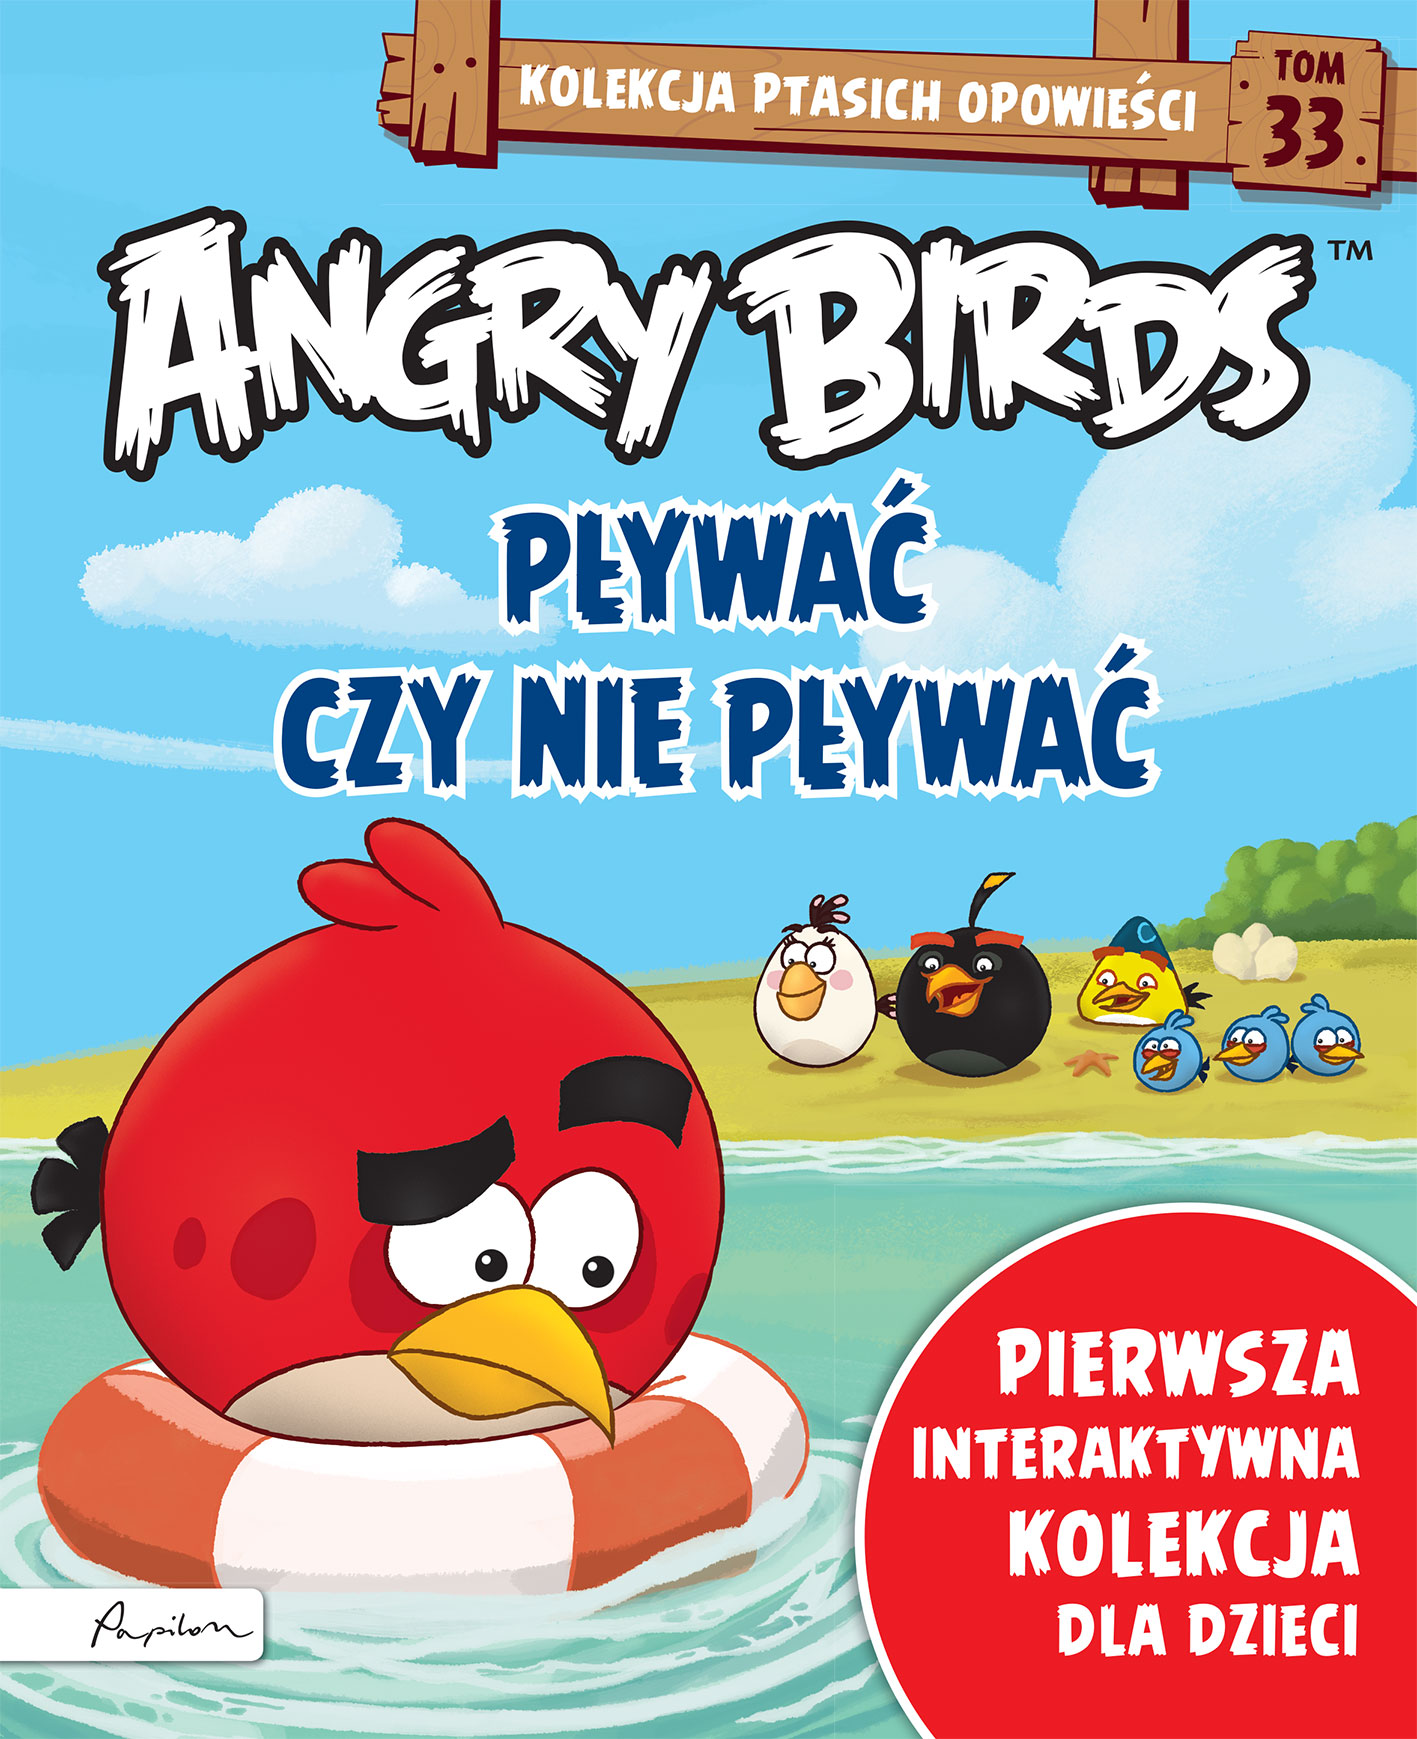 Angry Birds. Kolekcja ptasich opowieści 33. Pływać czy nie pływać